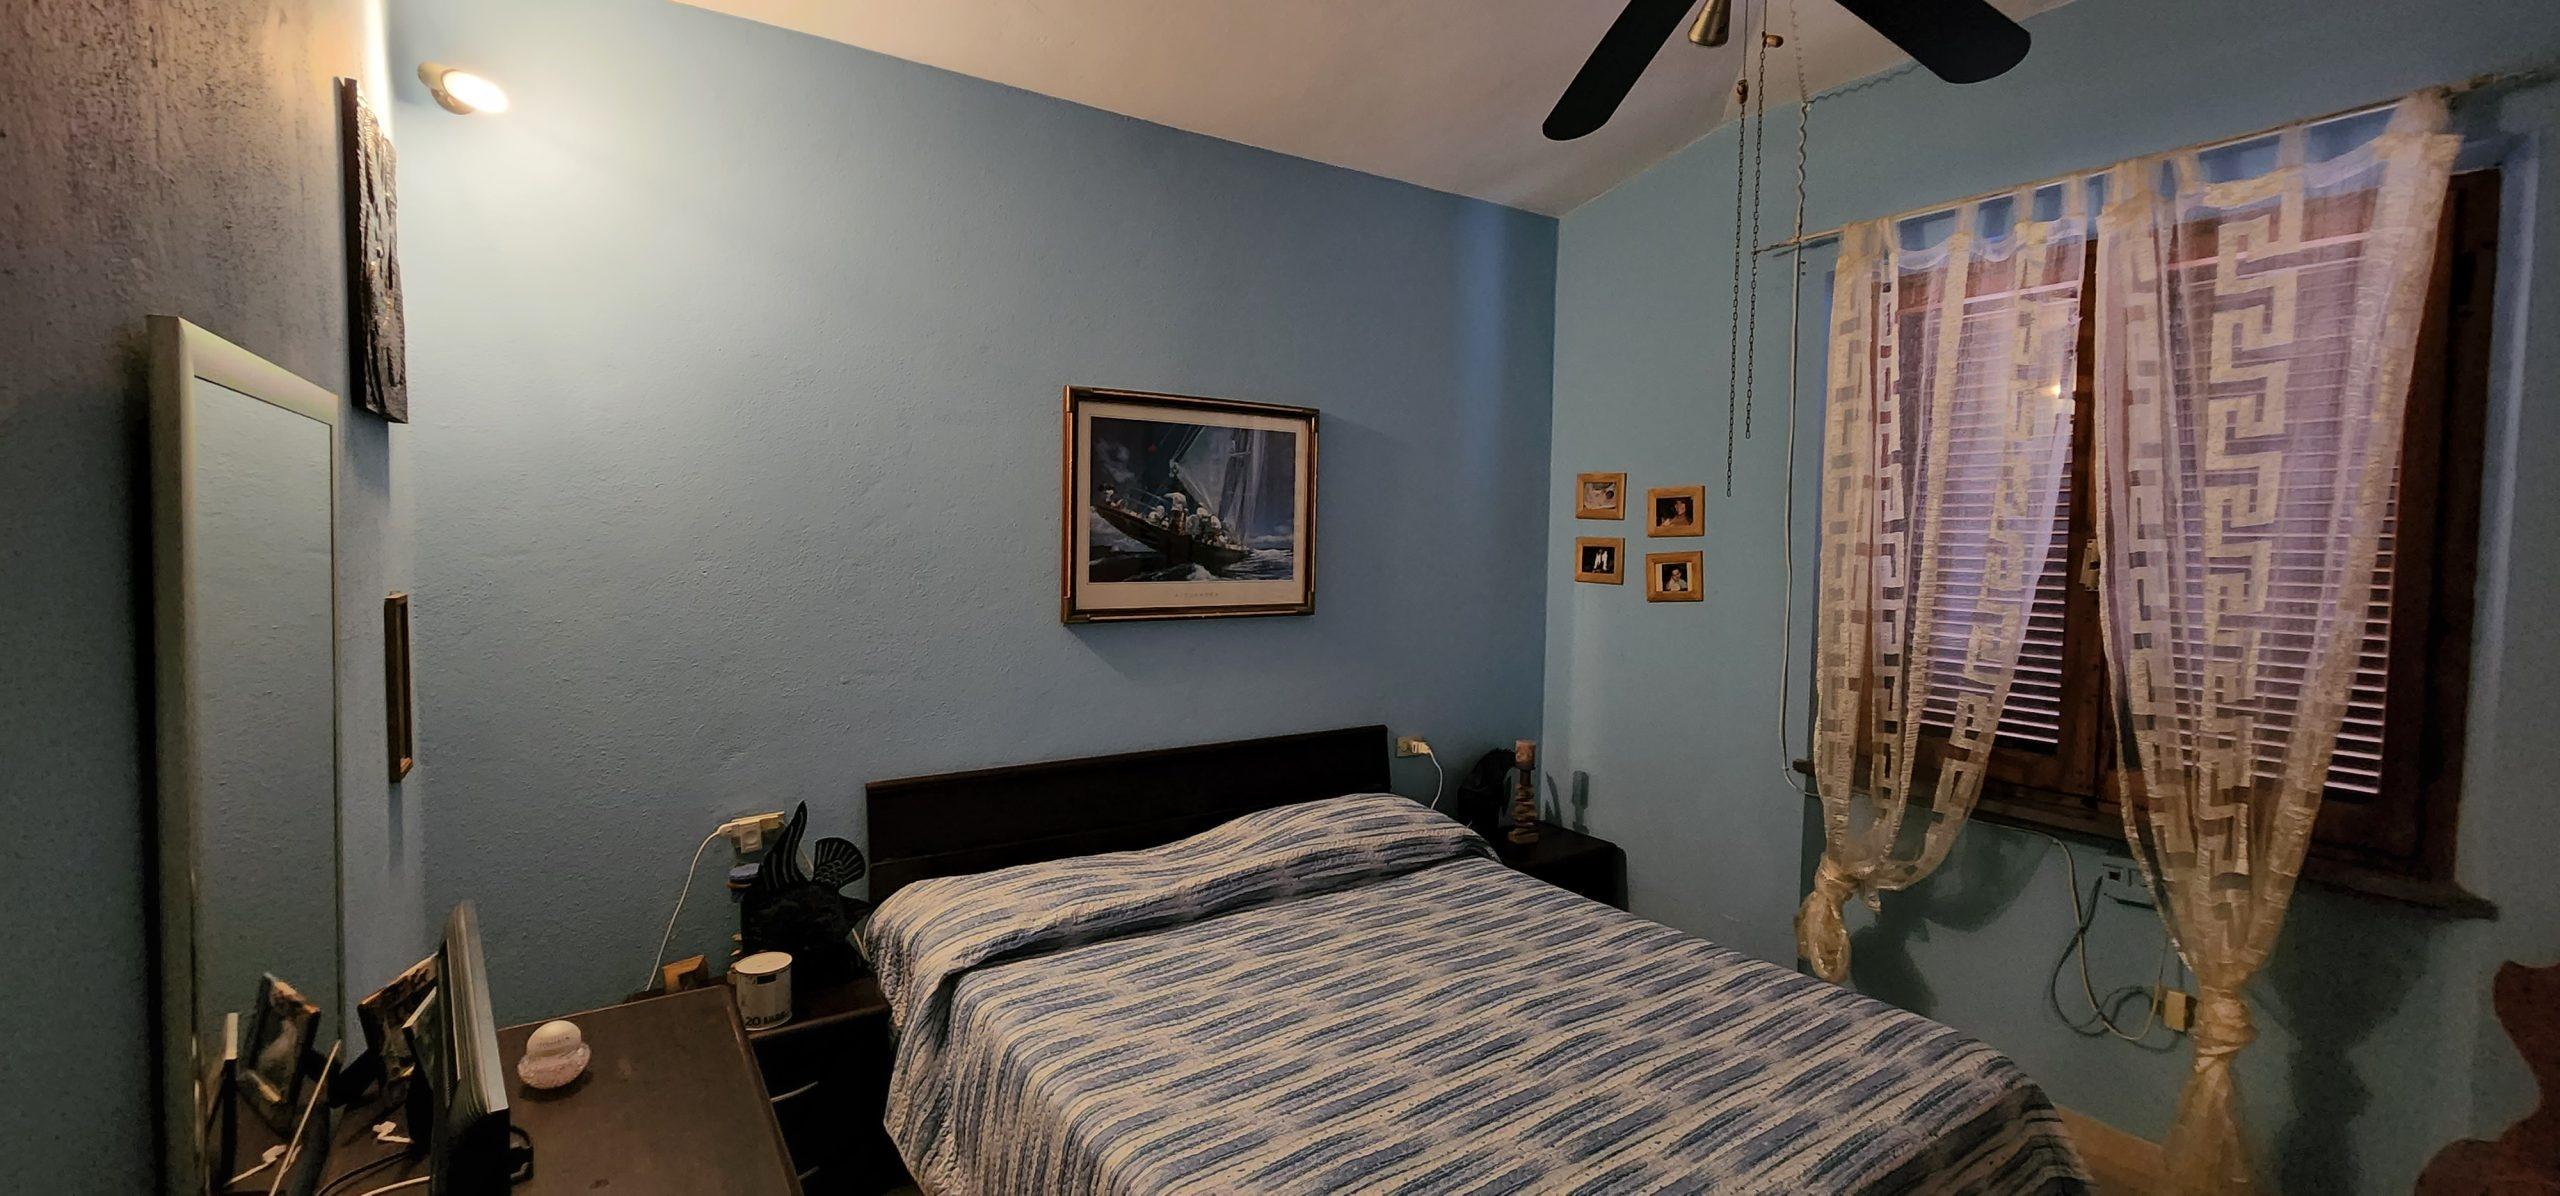 La seconda camera da letto della Casa Gabri all'isola d'Elba.